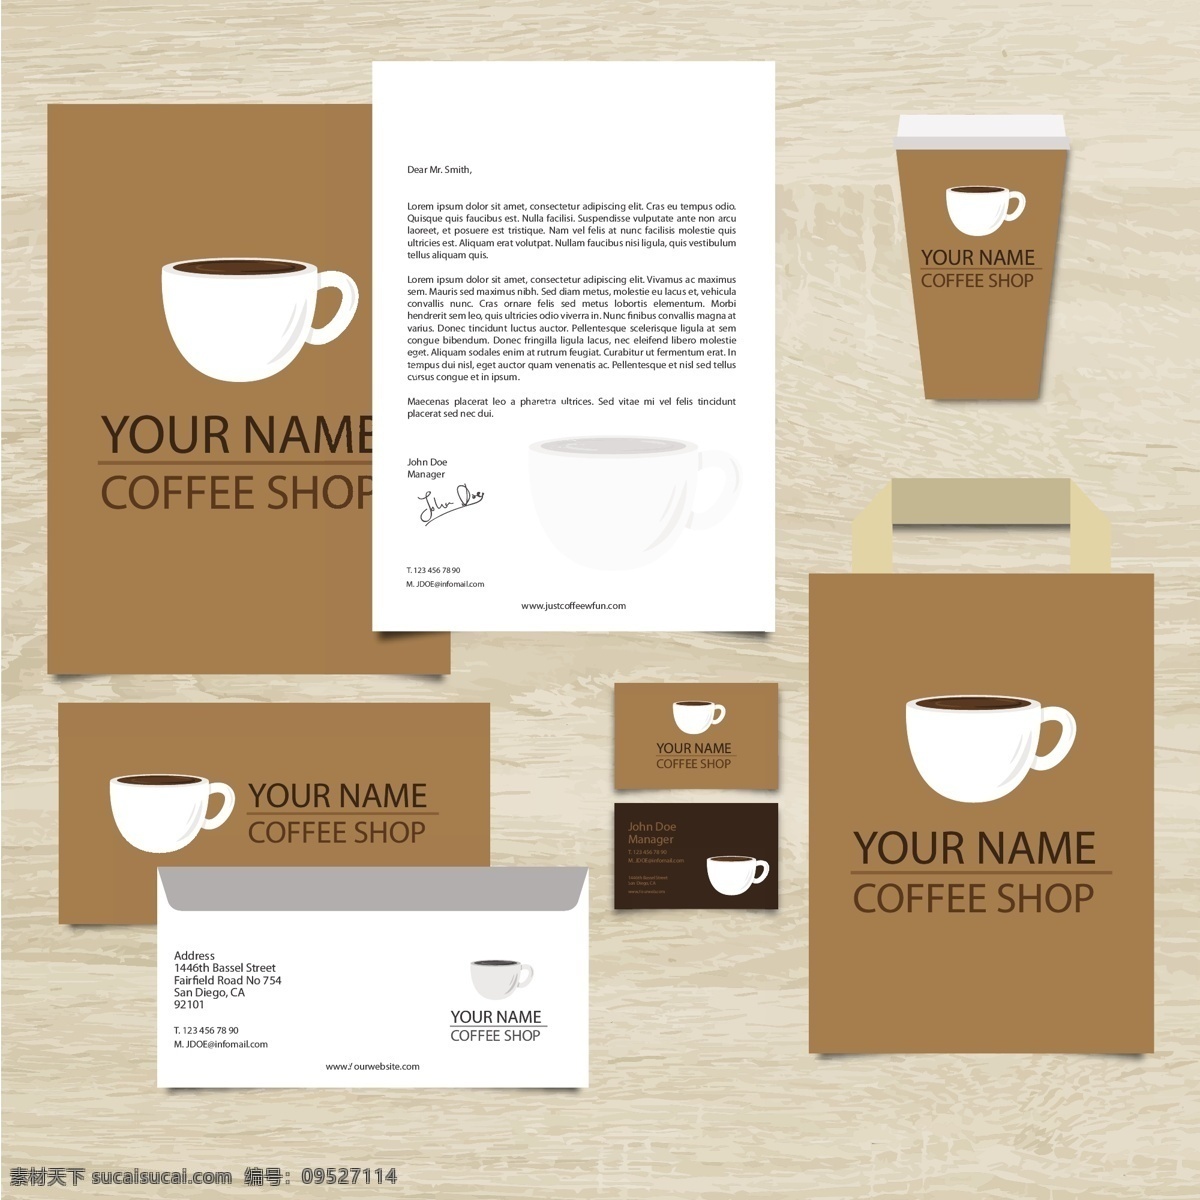 咖啡店vi 咖啡 店 文具 背景 食品 样机 纸张 卡片 模板 包装 杯 企业 品牌 标识 商标 商店 最新矢量素材